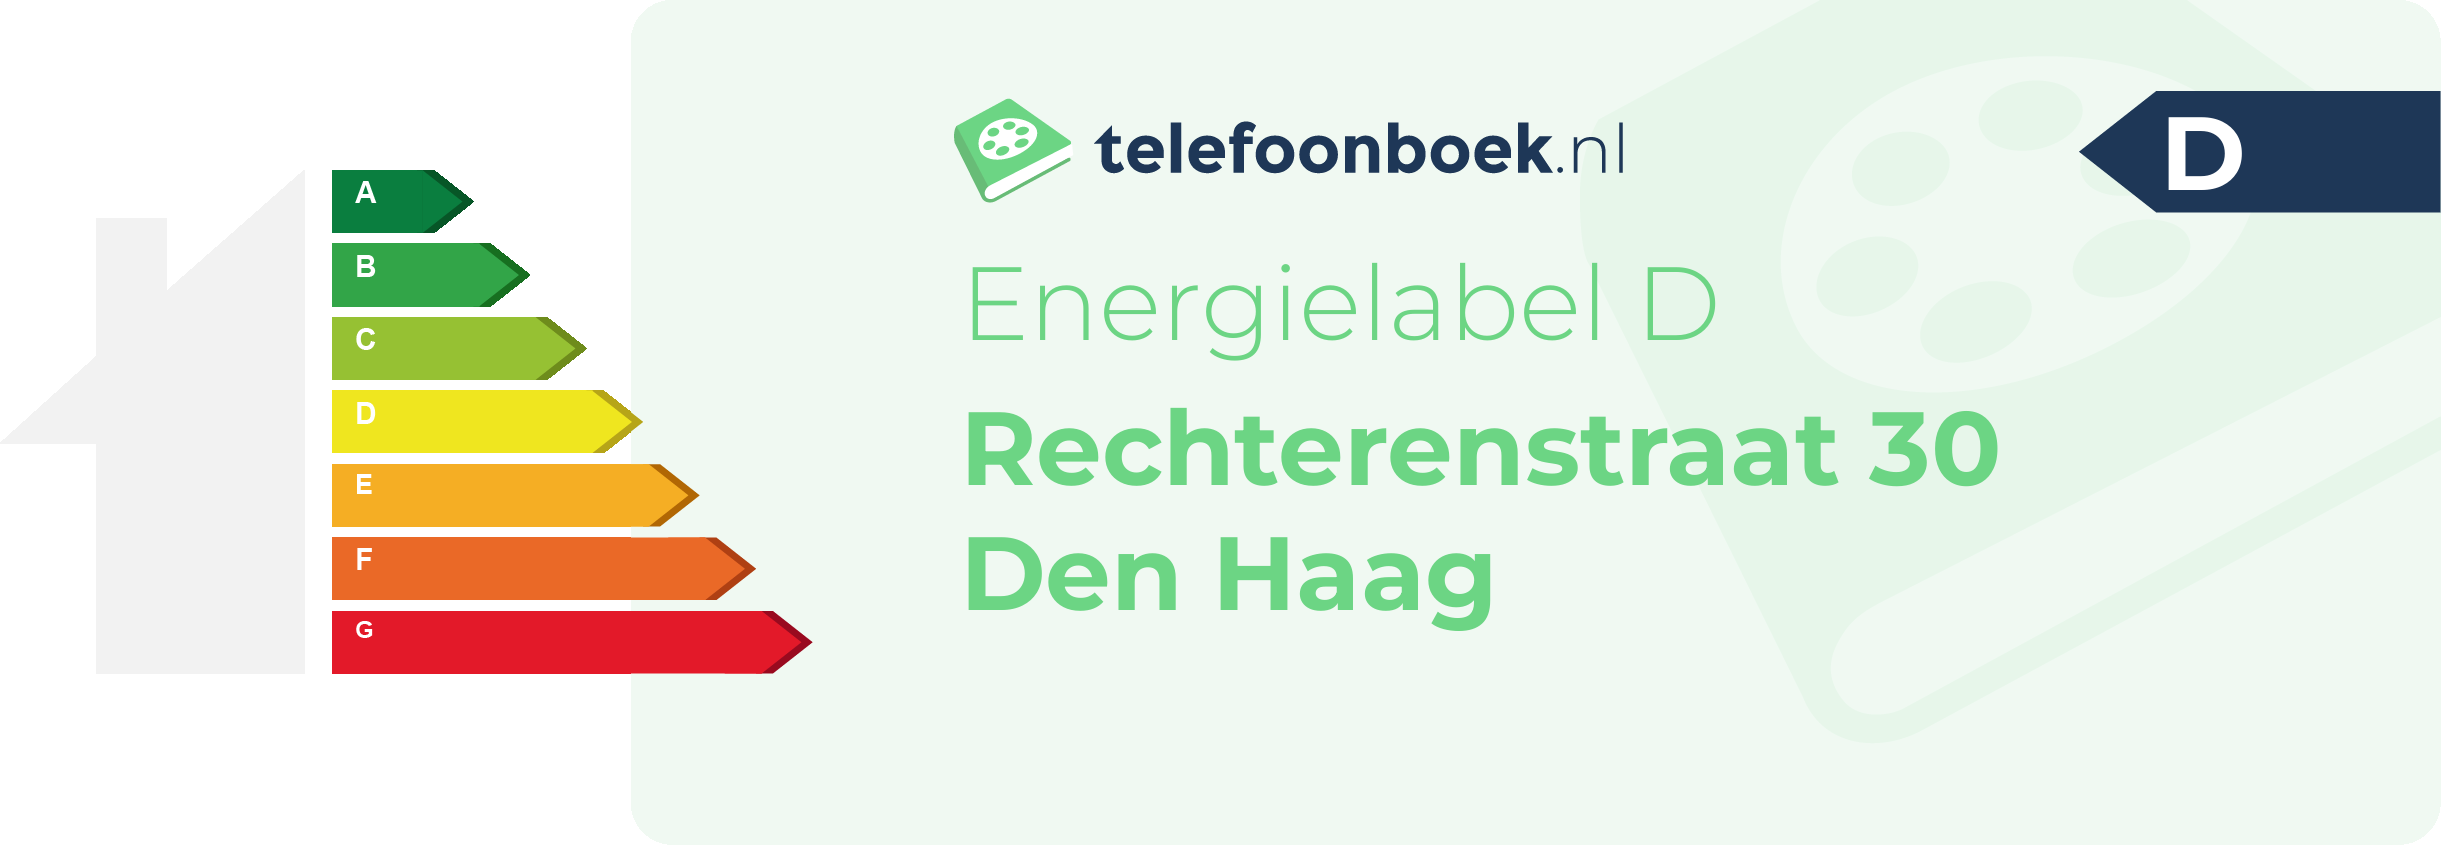 Energielabel Rechterenstraat 30 Den Haag